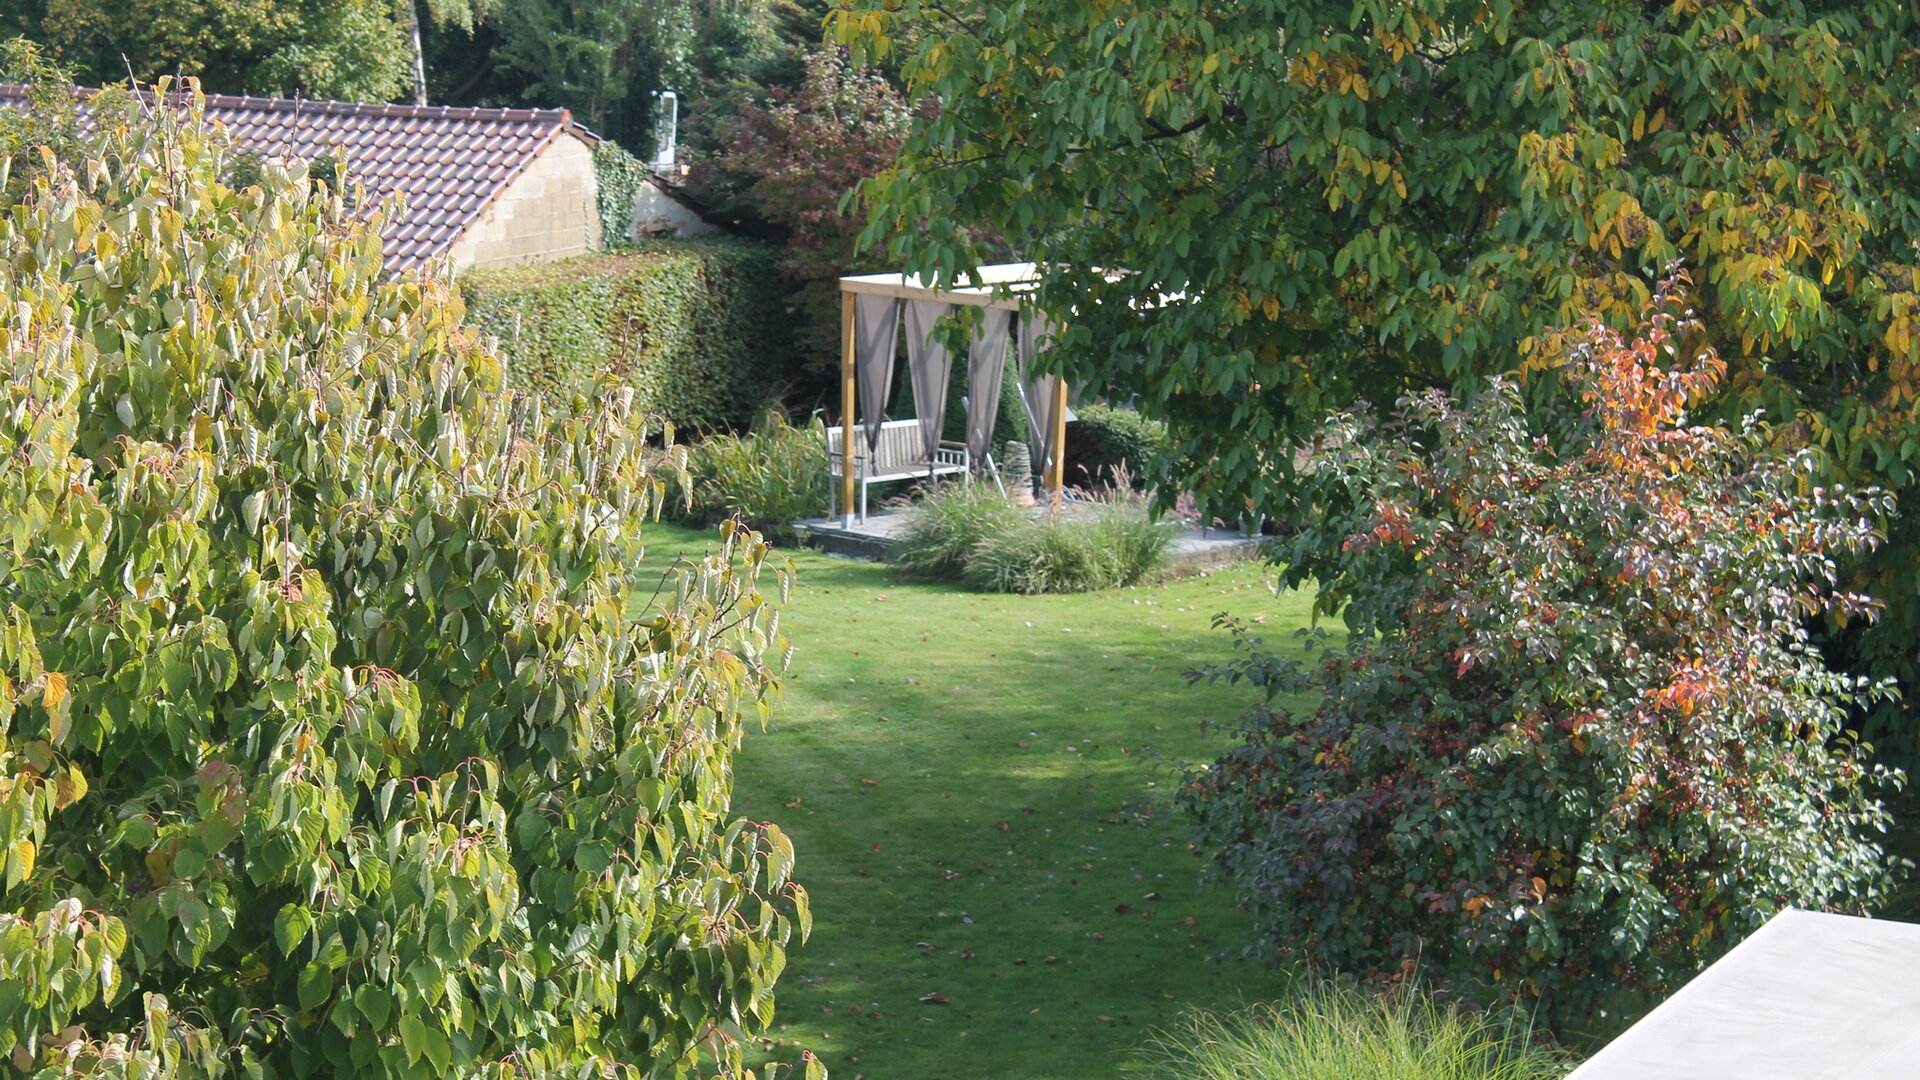 Vakantiewoning Maas & Mechelen - zicht op de tuin met wellness